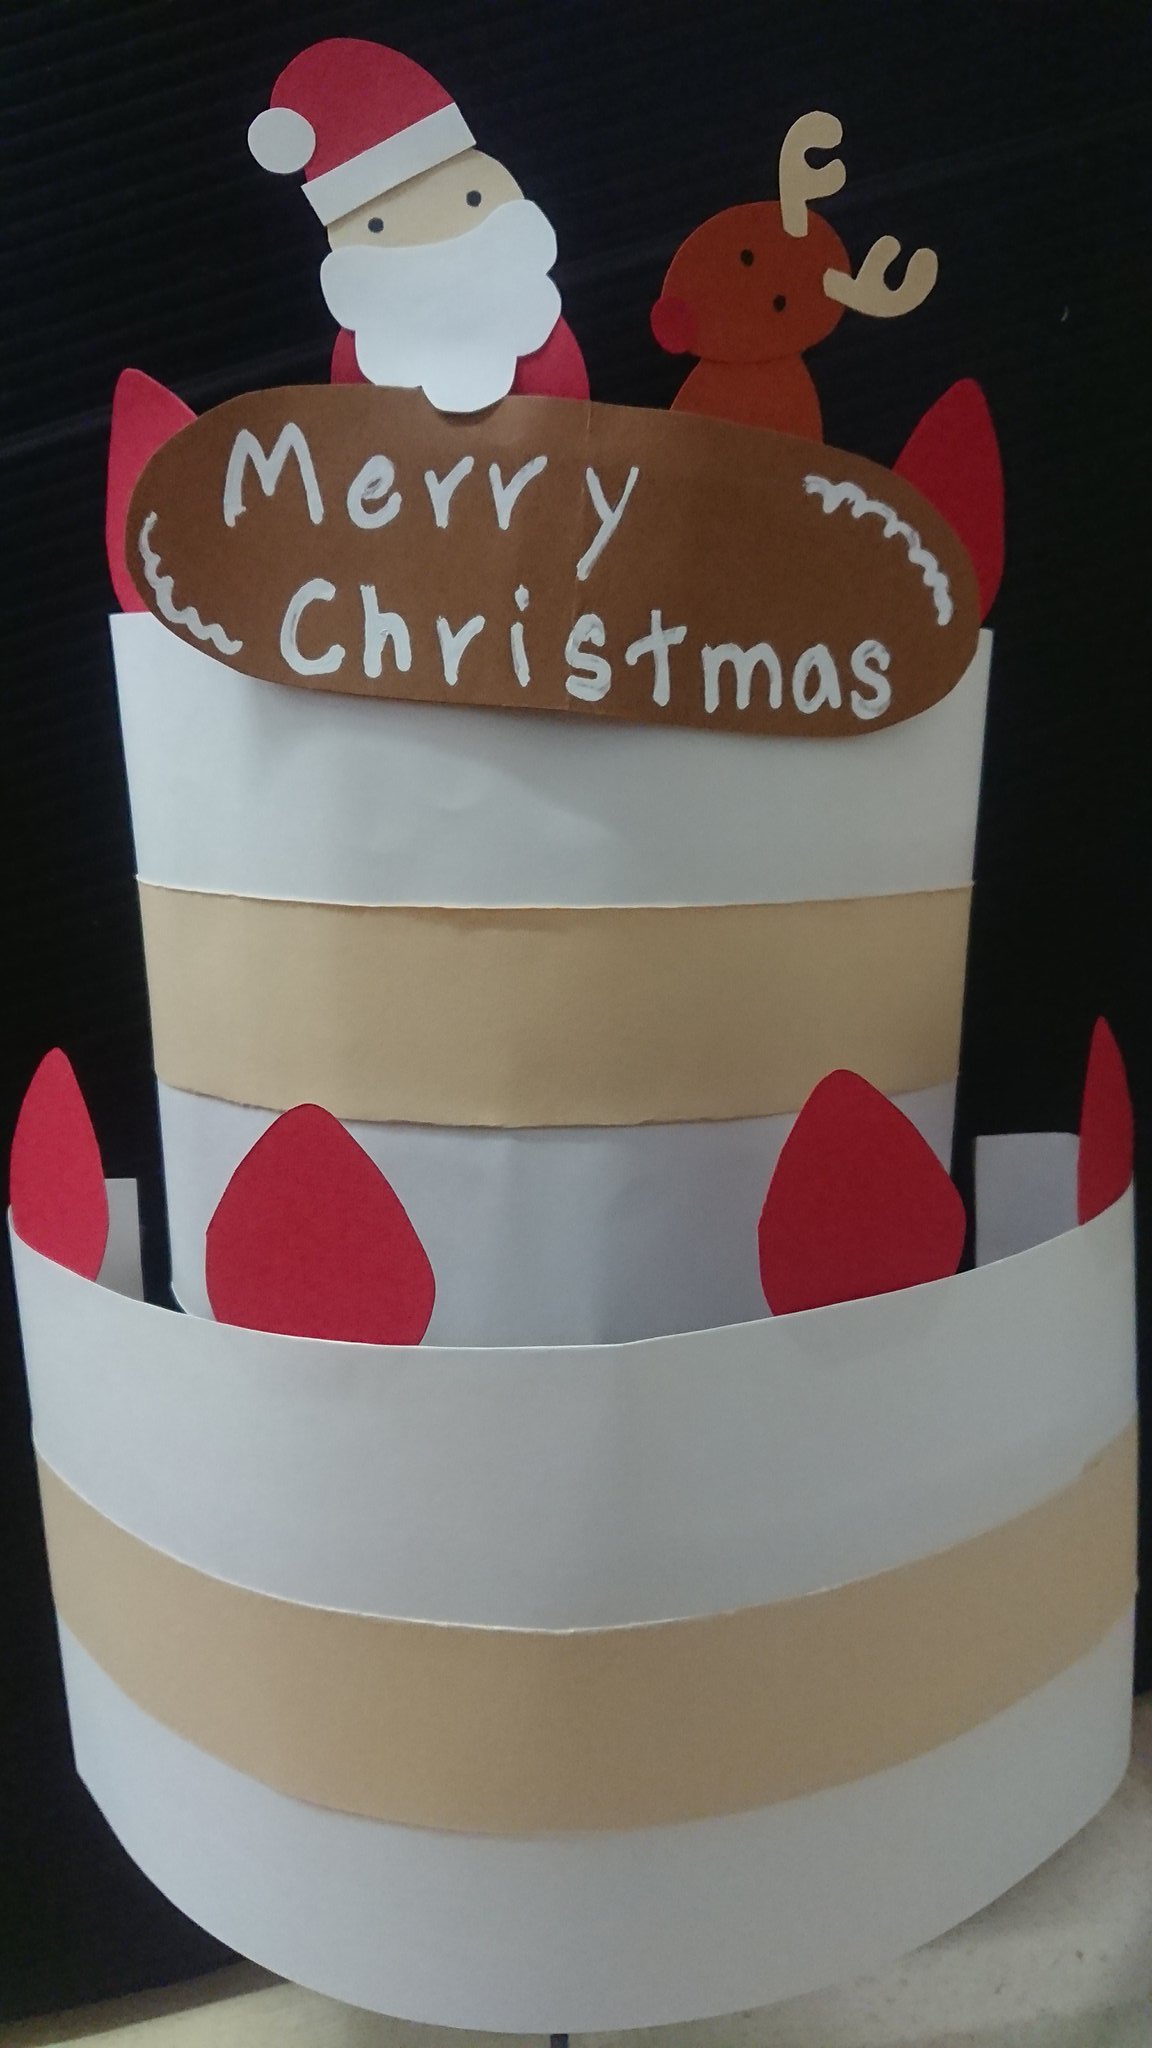 ふっちー Ar Twitter 今年はケーキの看板作りができました 平面だと物足りないなと思い即興で作りましたが微妙すぎて 笑 セブンイレブン クリスマス ケーキ 看板 広告